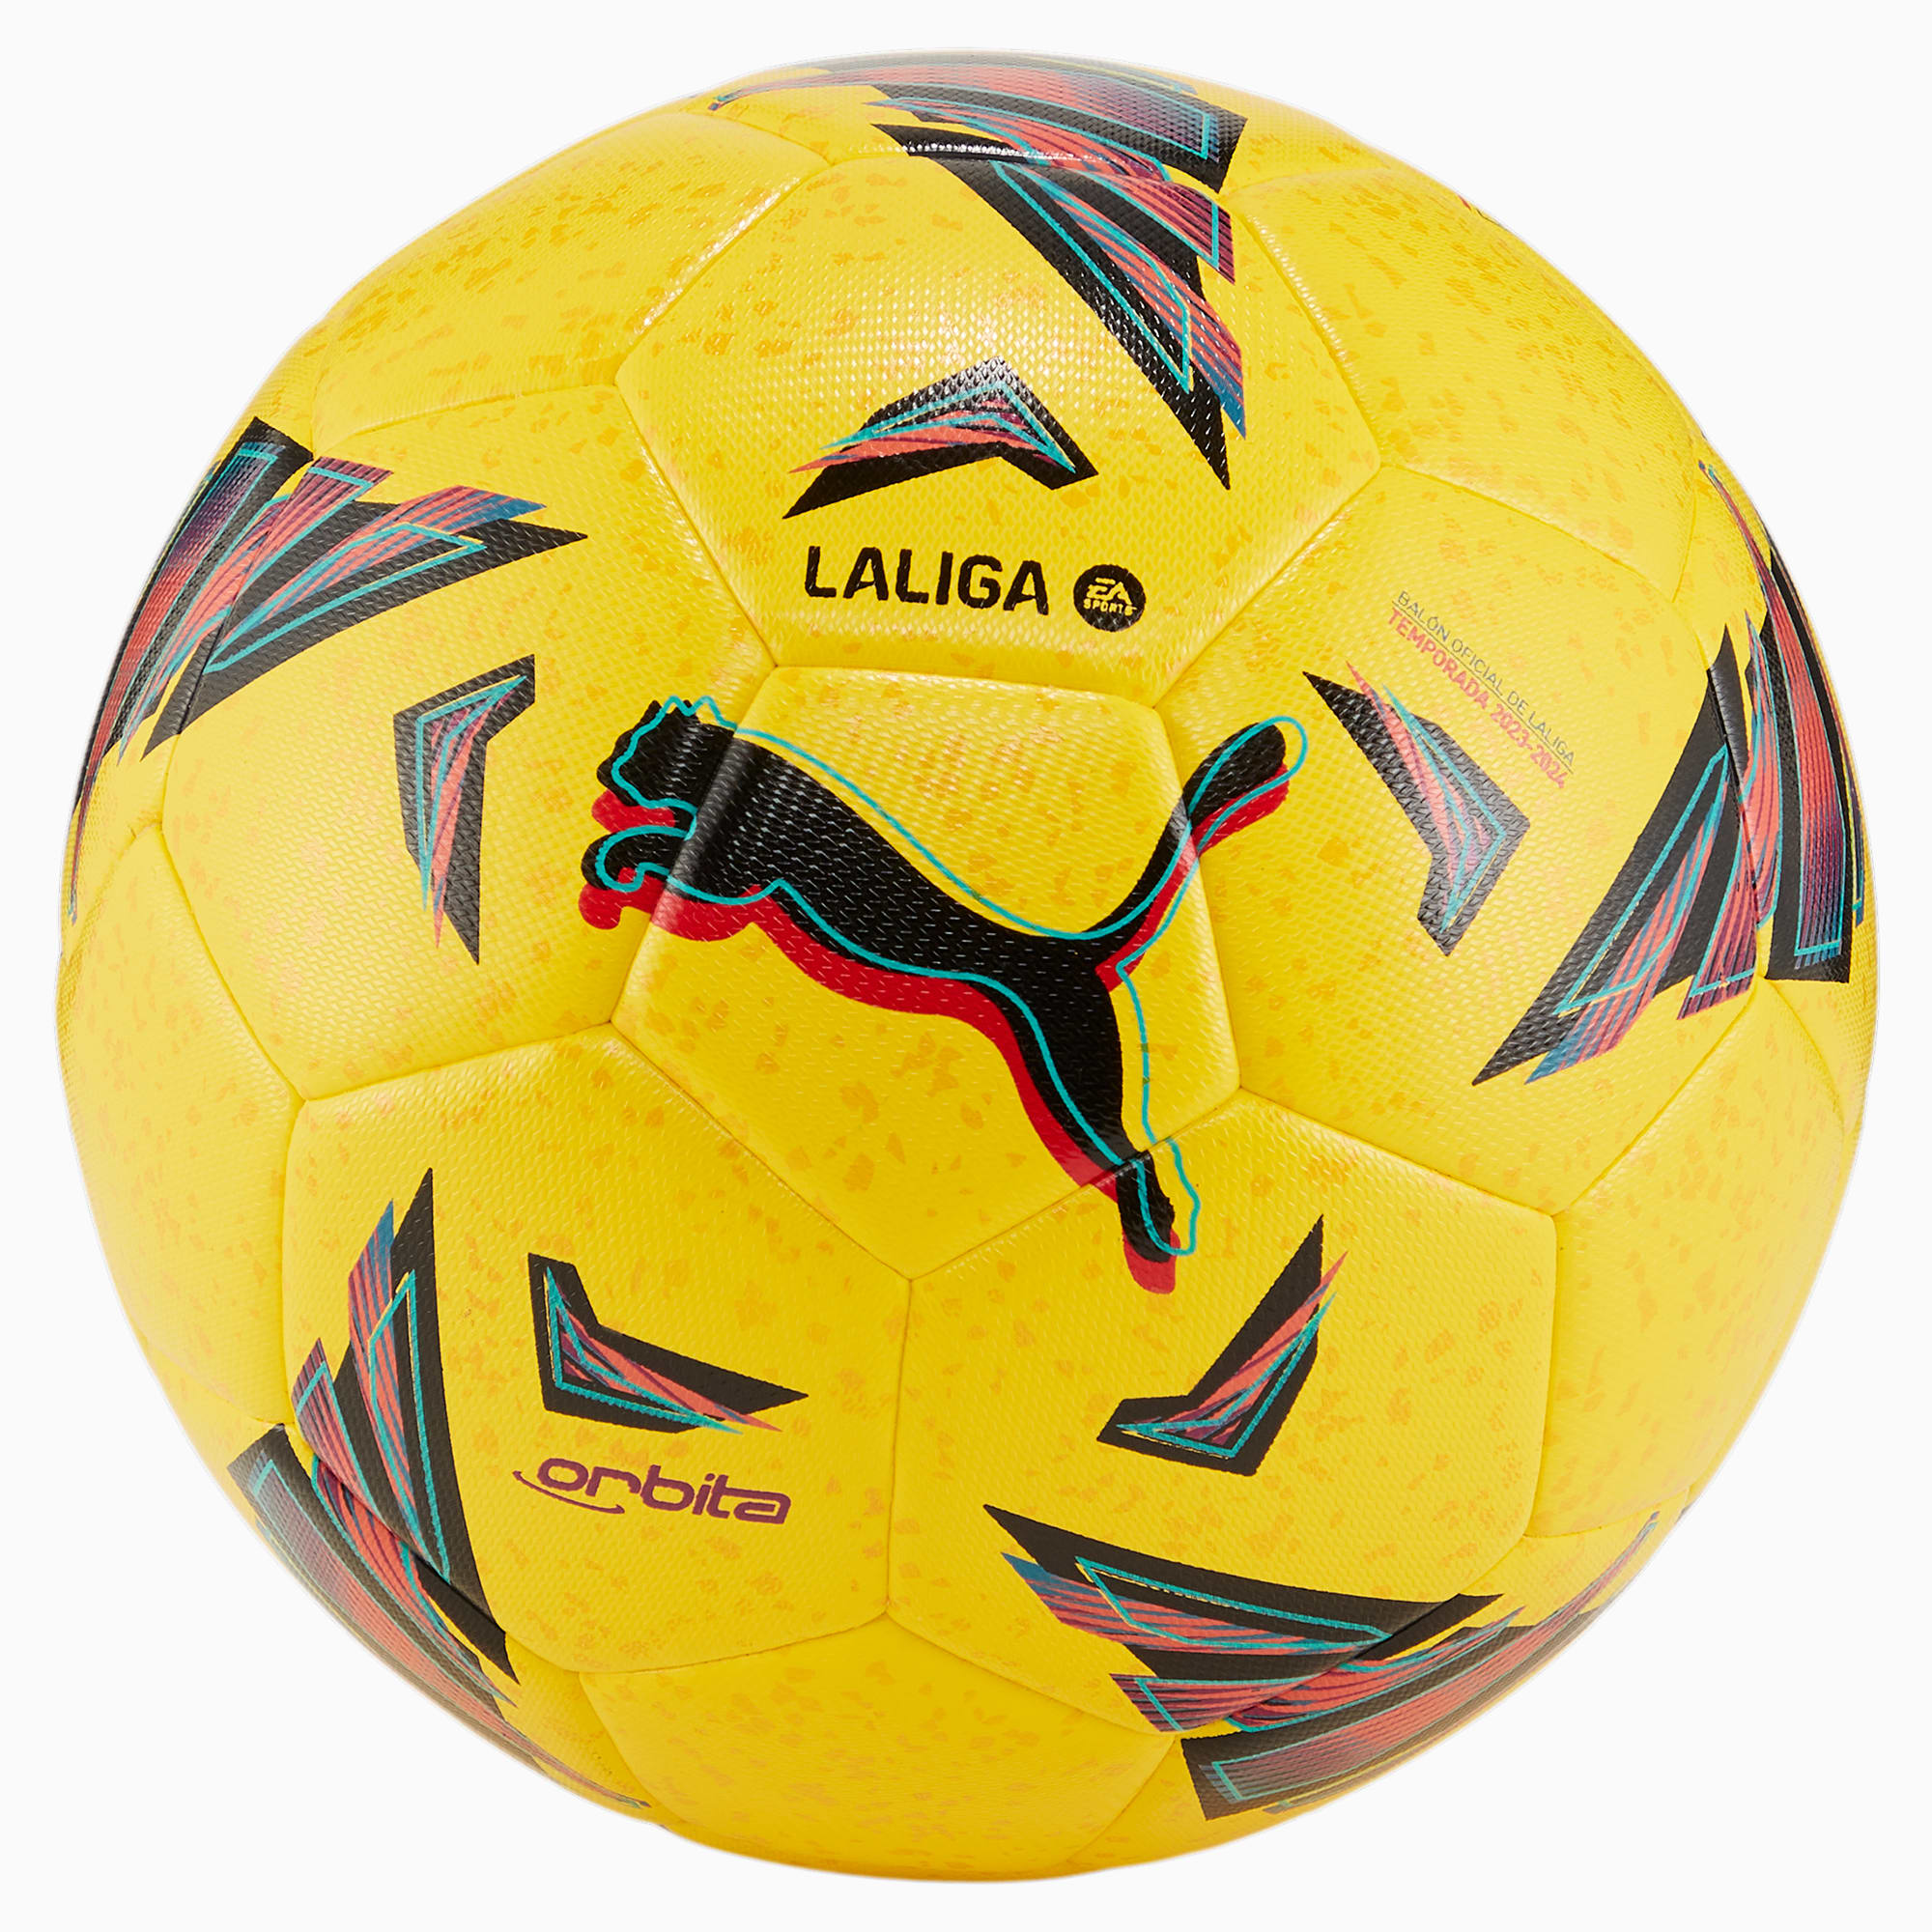 PUMA Orbita LaLiga Hybrid Trainingsfußball, Gelb, Größe: 5